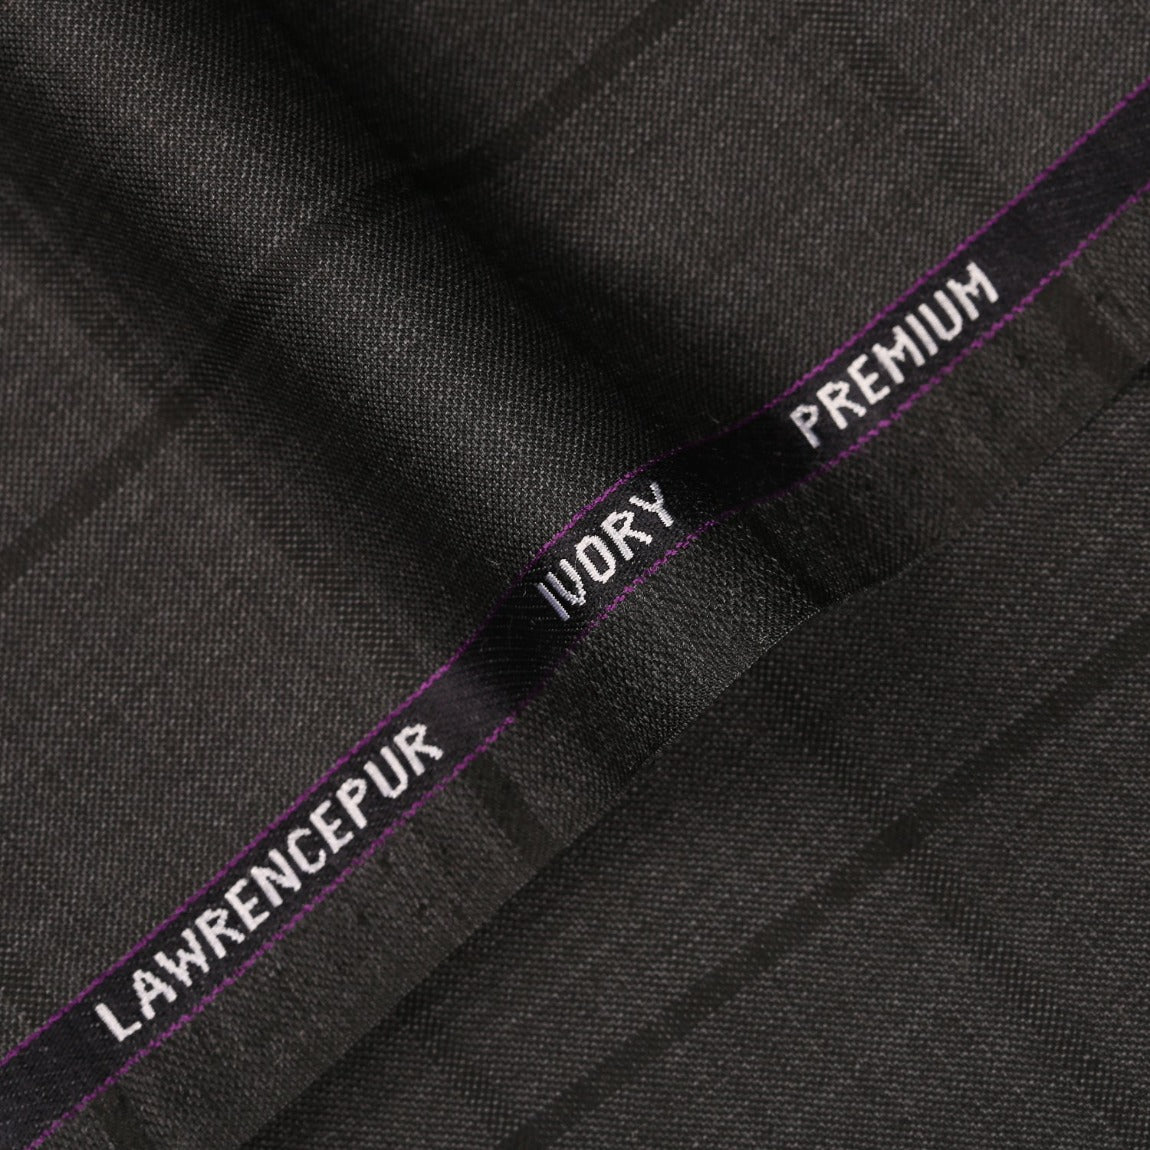 Windowpane Checks-Iron Grey, Ivory Premium Wool Rich Suiting Fabric